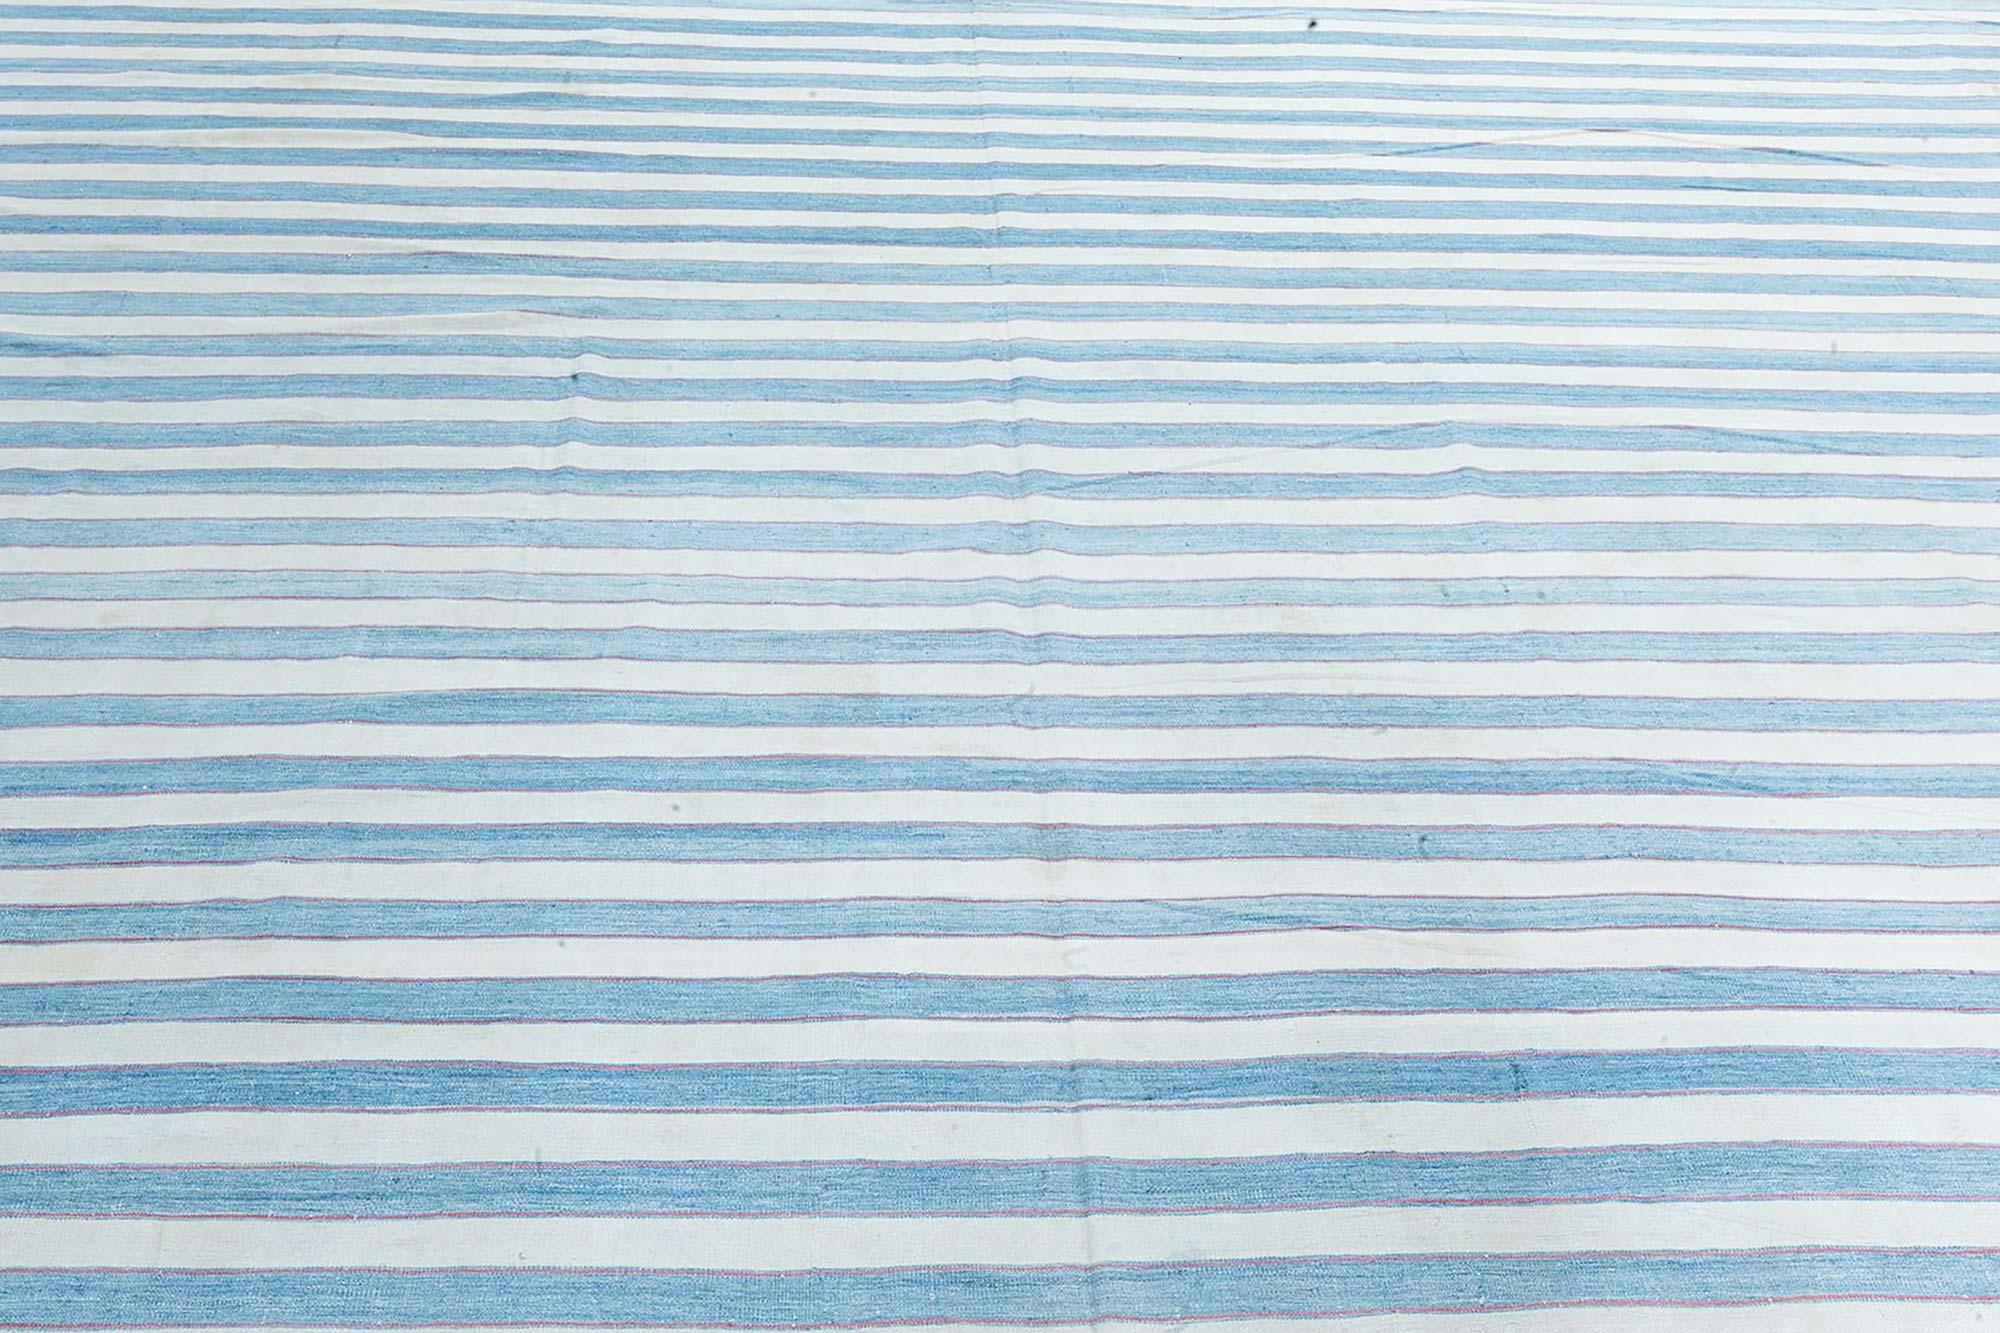 Vintage Indian Dhurrie Striped Blue Beige rug
Size: 15'10